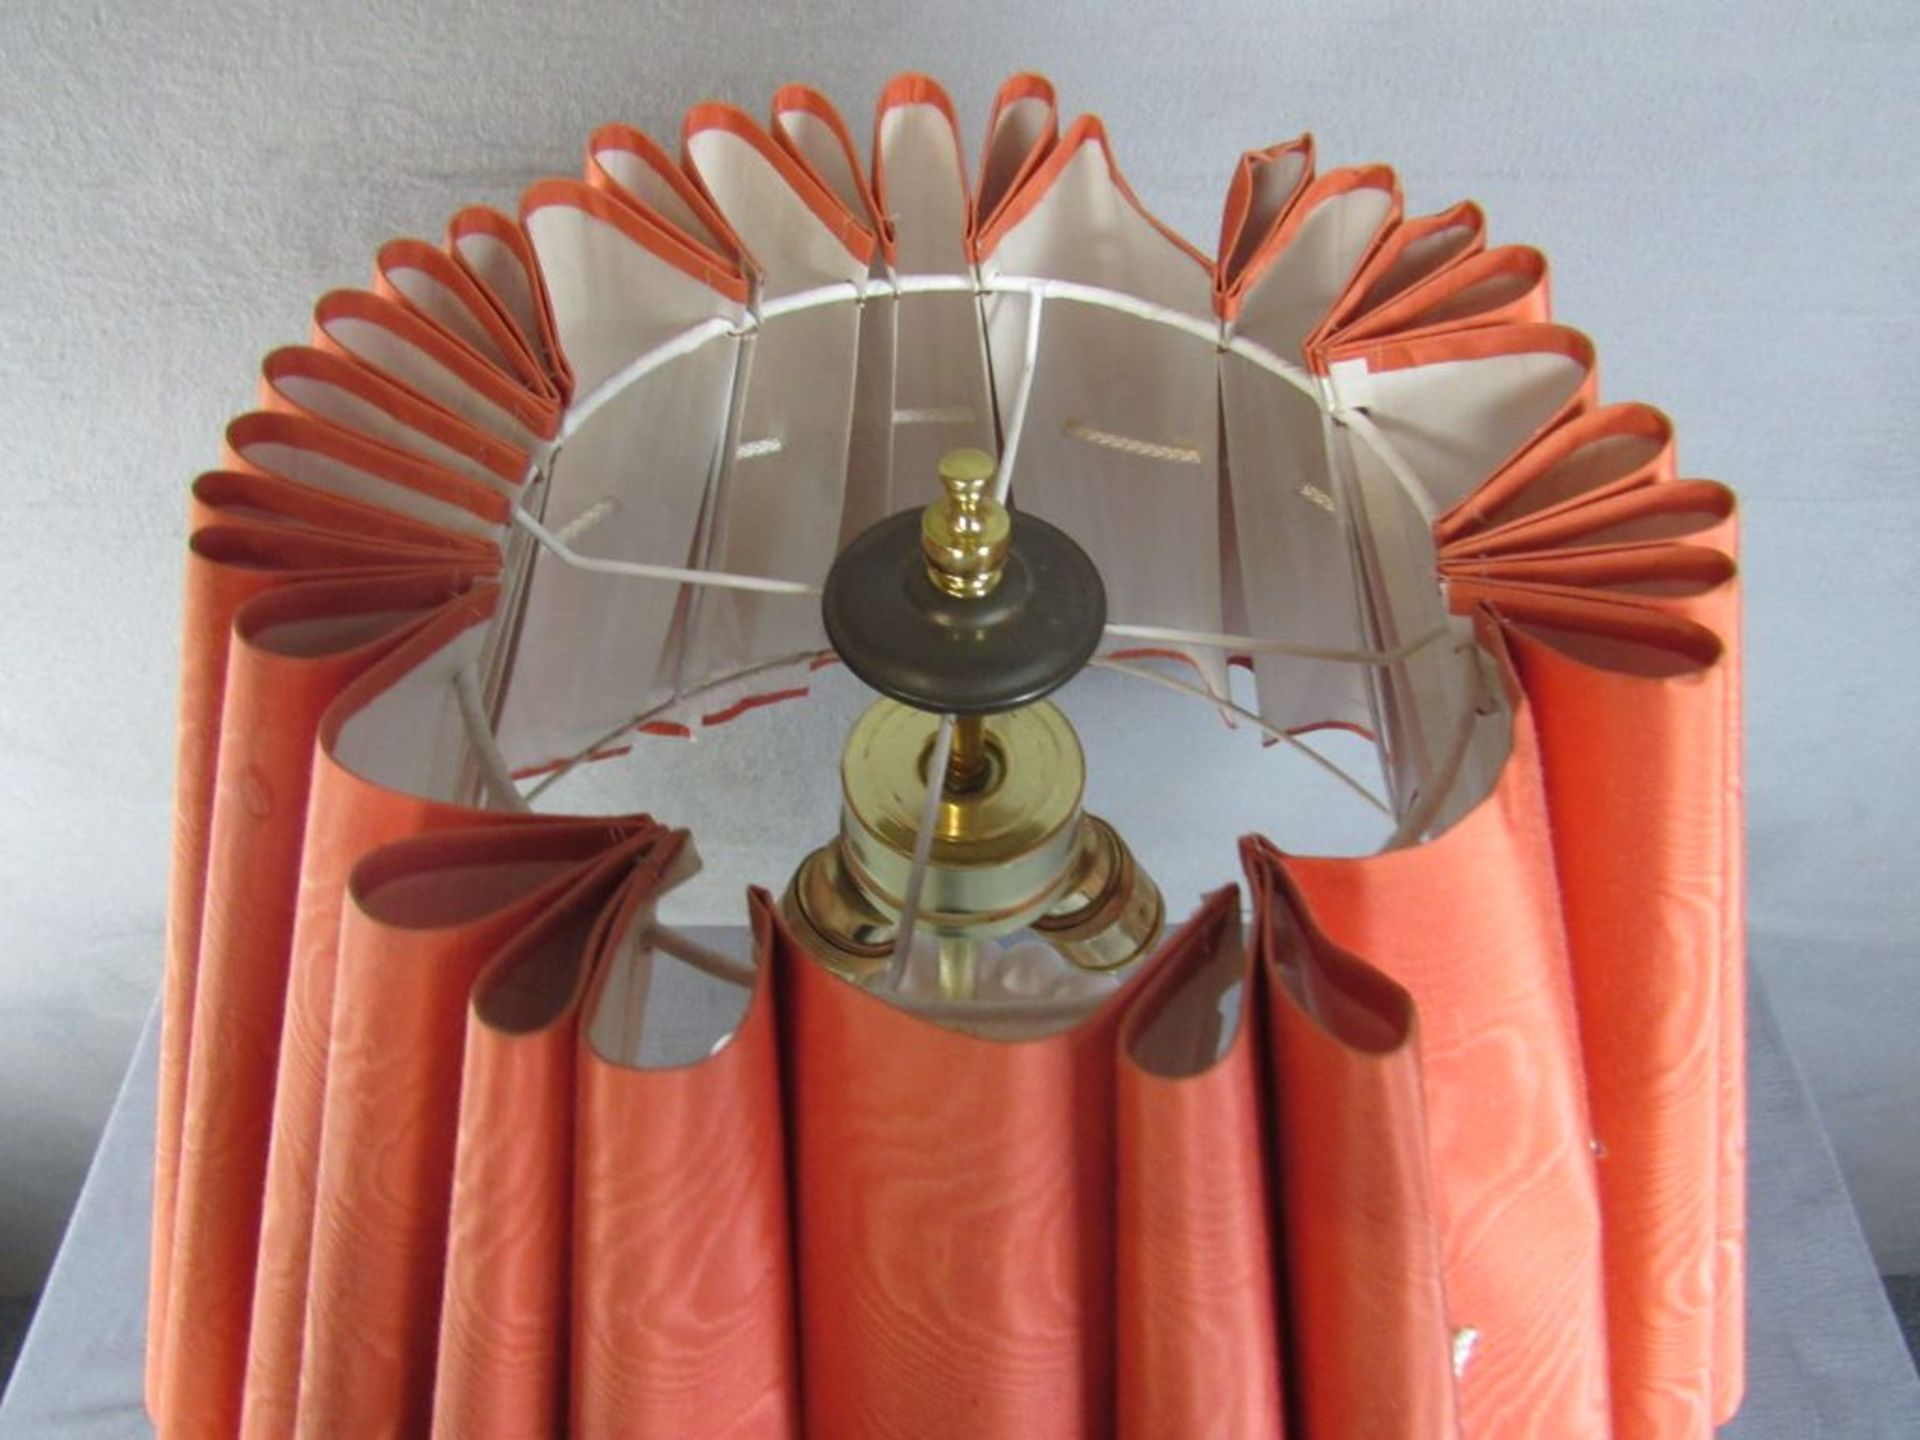 Große Tischlampe Porzellan roter Schirm 60er jahre 74cm hoch - Image 3 of 6